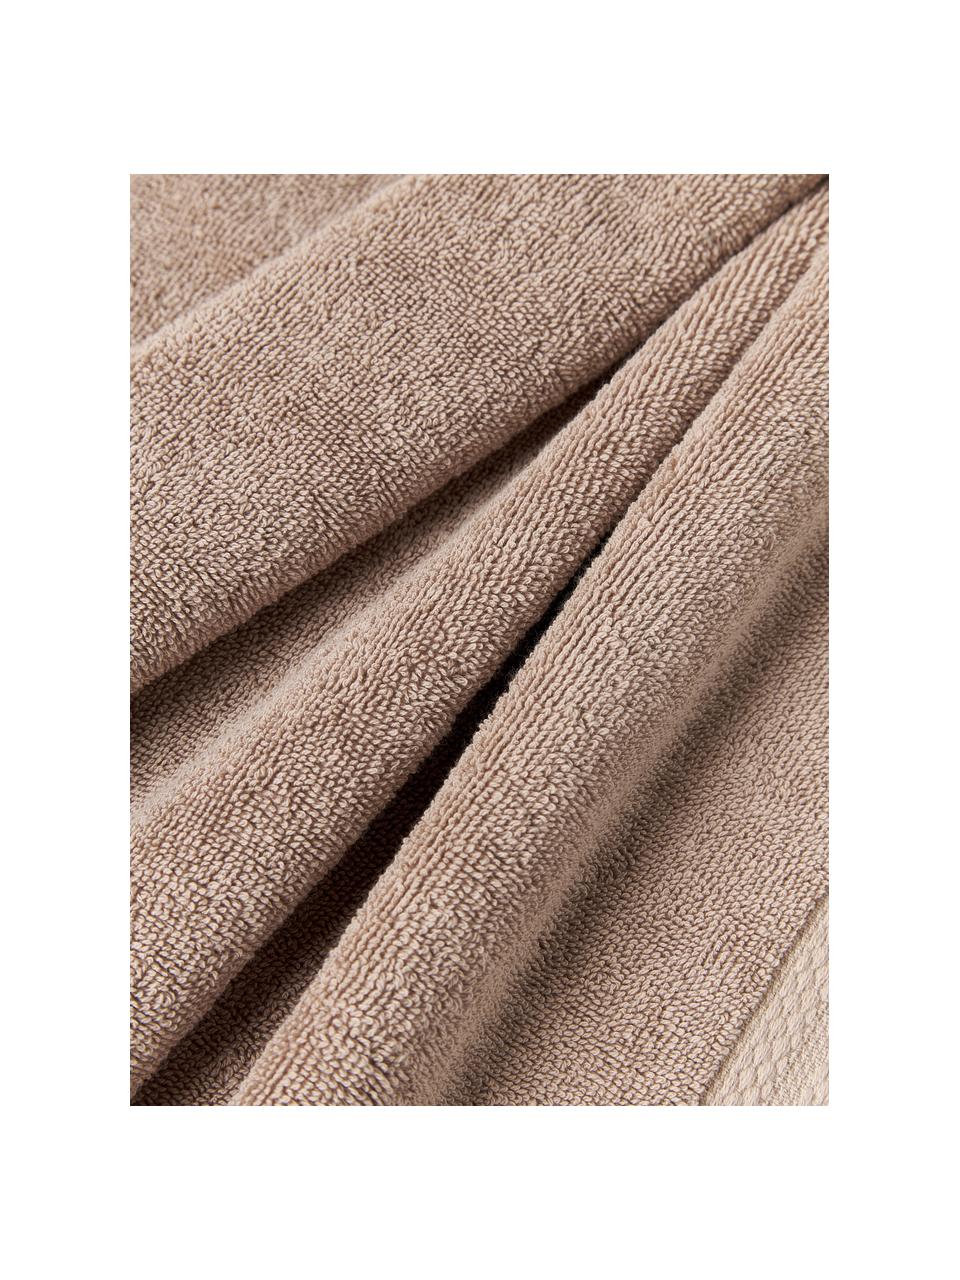 Handtuch Premium aus Bio-Baumwolle in verschiedenen Größen, 100 % Bio-Baumwolle, GOTS-zertifiziert (von GCL International, GCL-300517)
 Schwere Qualität, 600 g/m², Beige, XS Gästehandtuch, B 30 x L 30 cm, 2 Stück